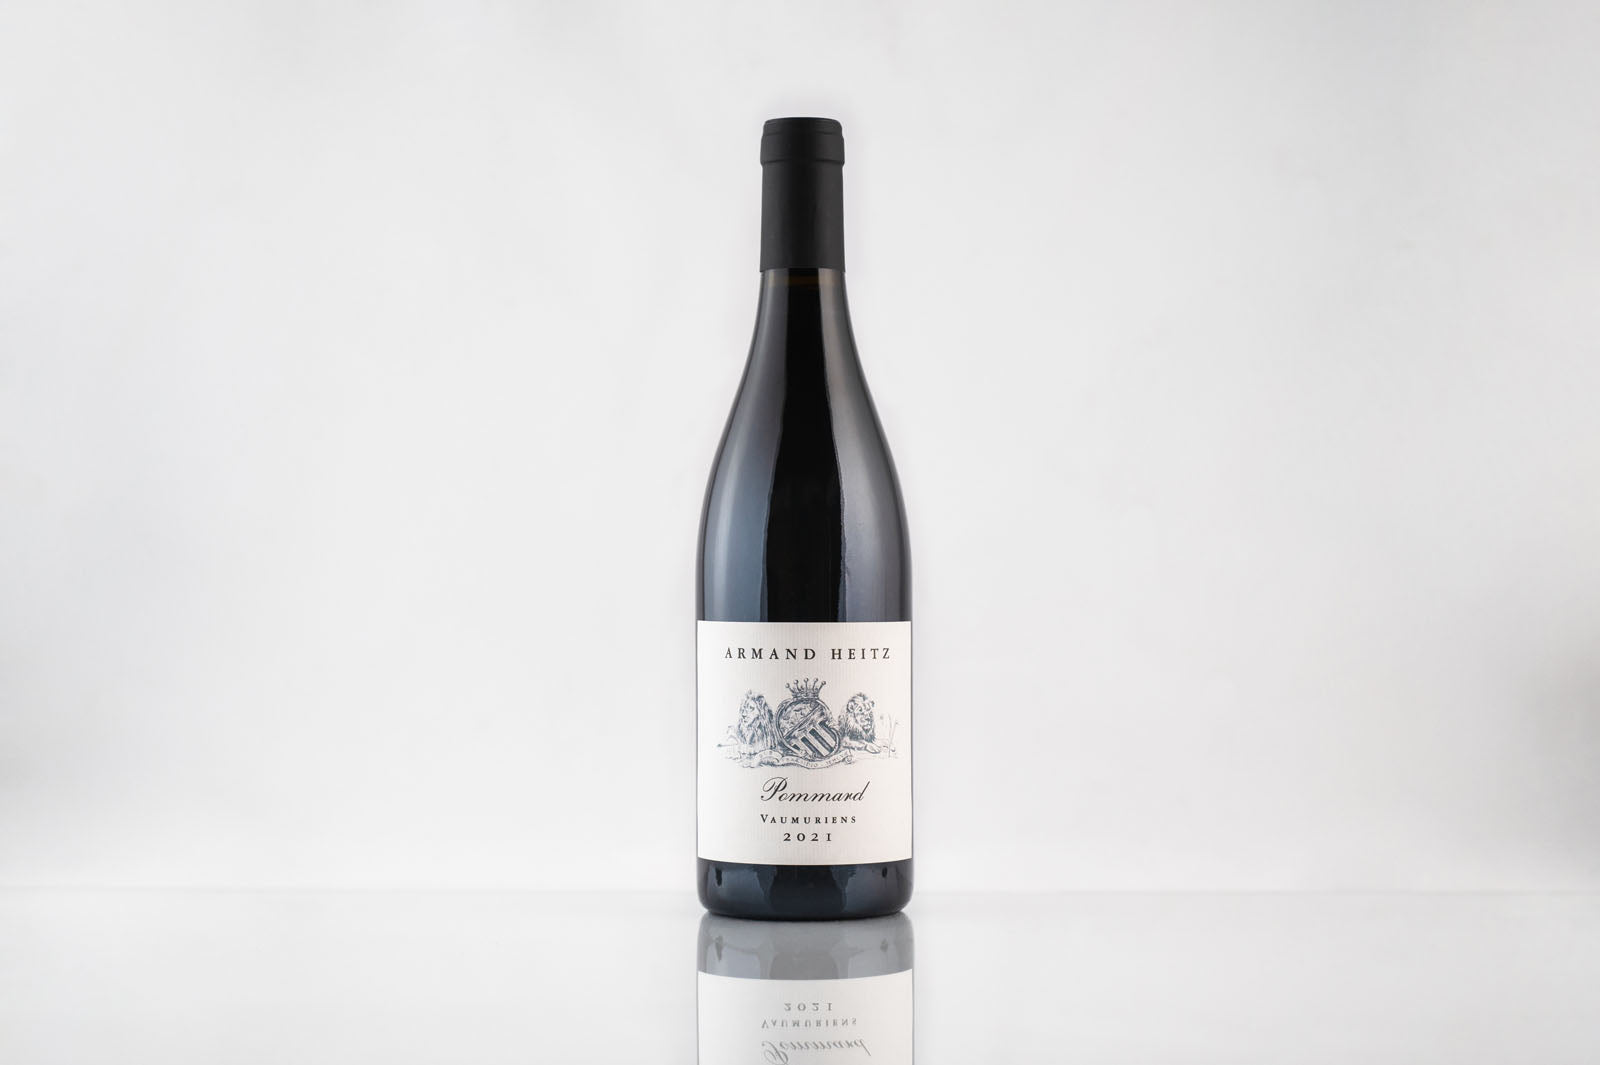 Bouteille de vin rouge de Bourgogne Pommard Vaumuriens 2021 Armand Heitz